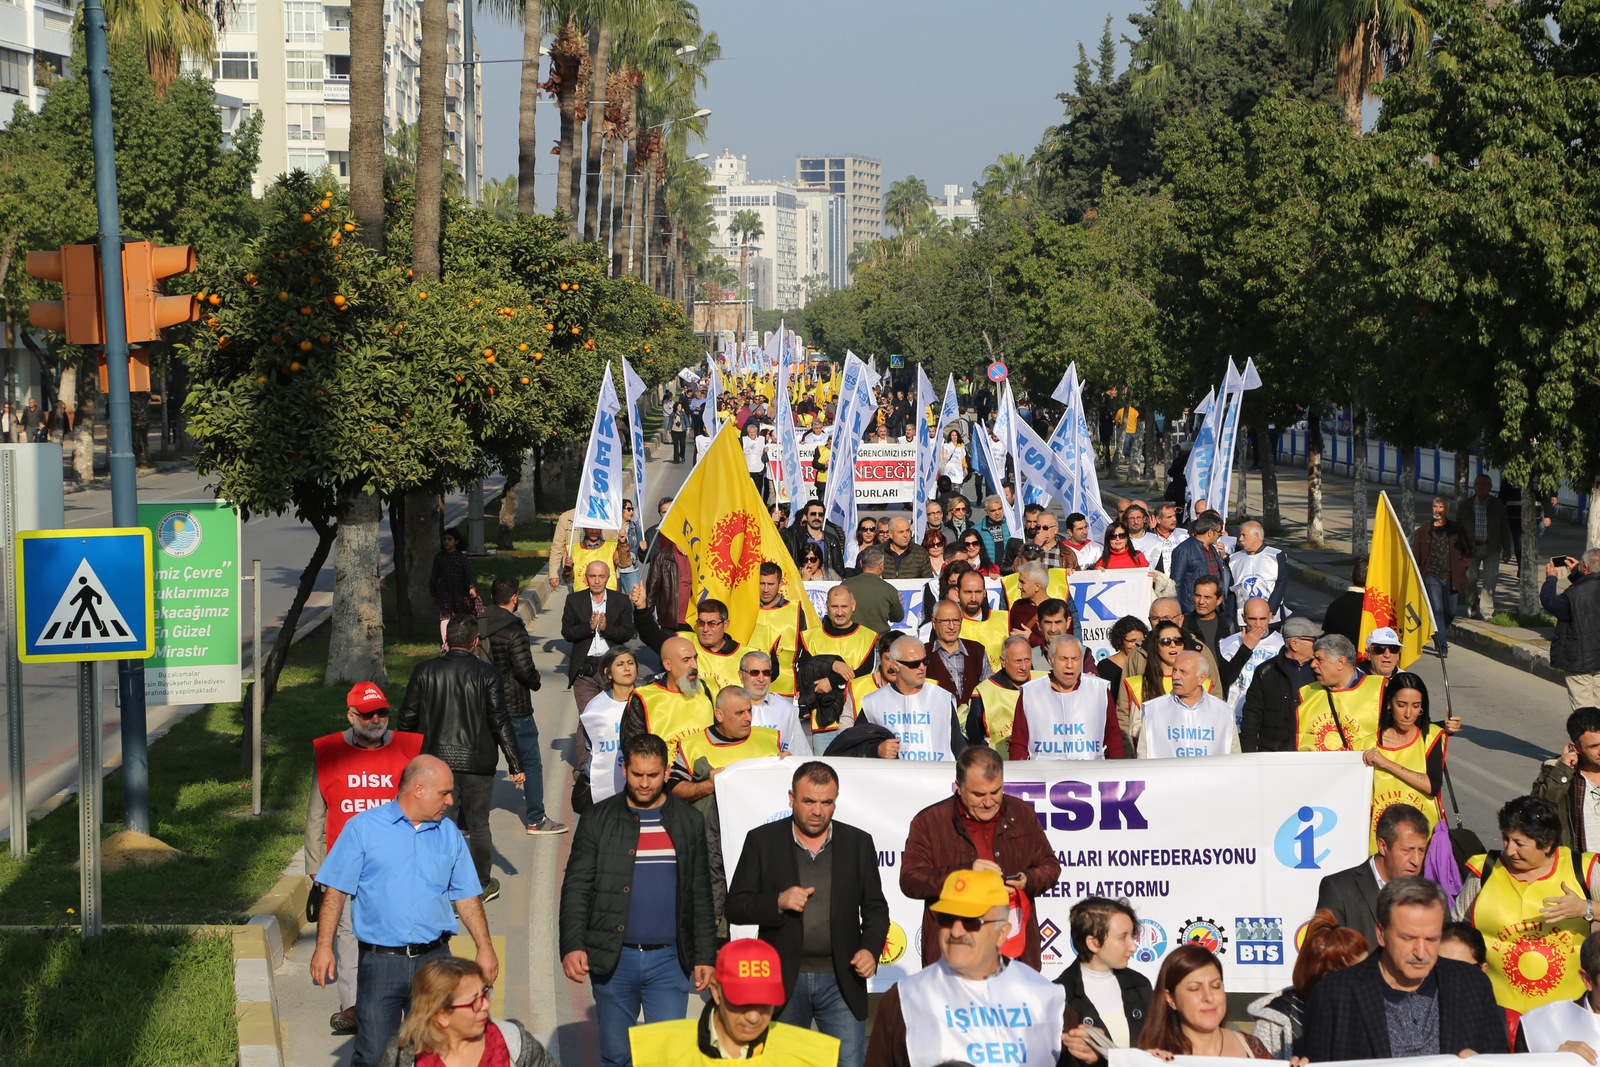 21 Aralık’ta Mersin’den Seslendik, “Halk İçin Bütçe, Demokratik Türkiye İstiyoruz!”